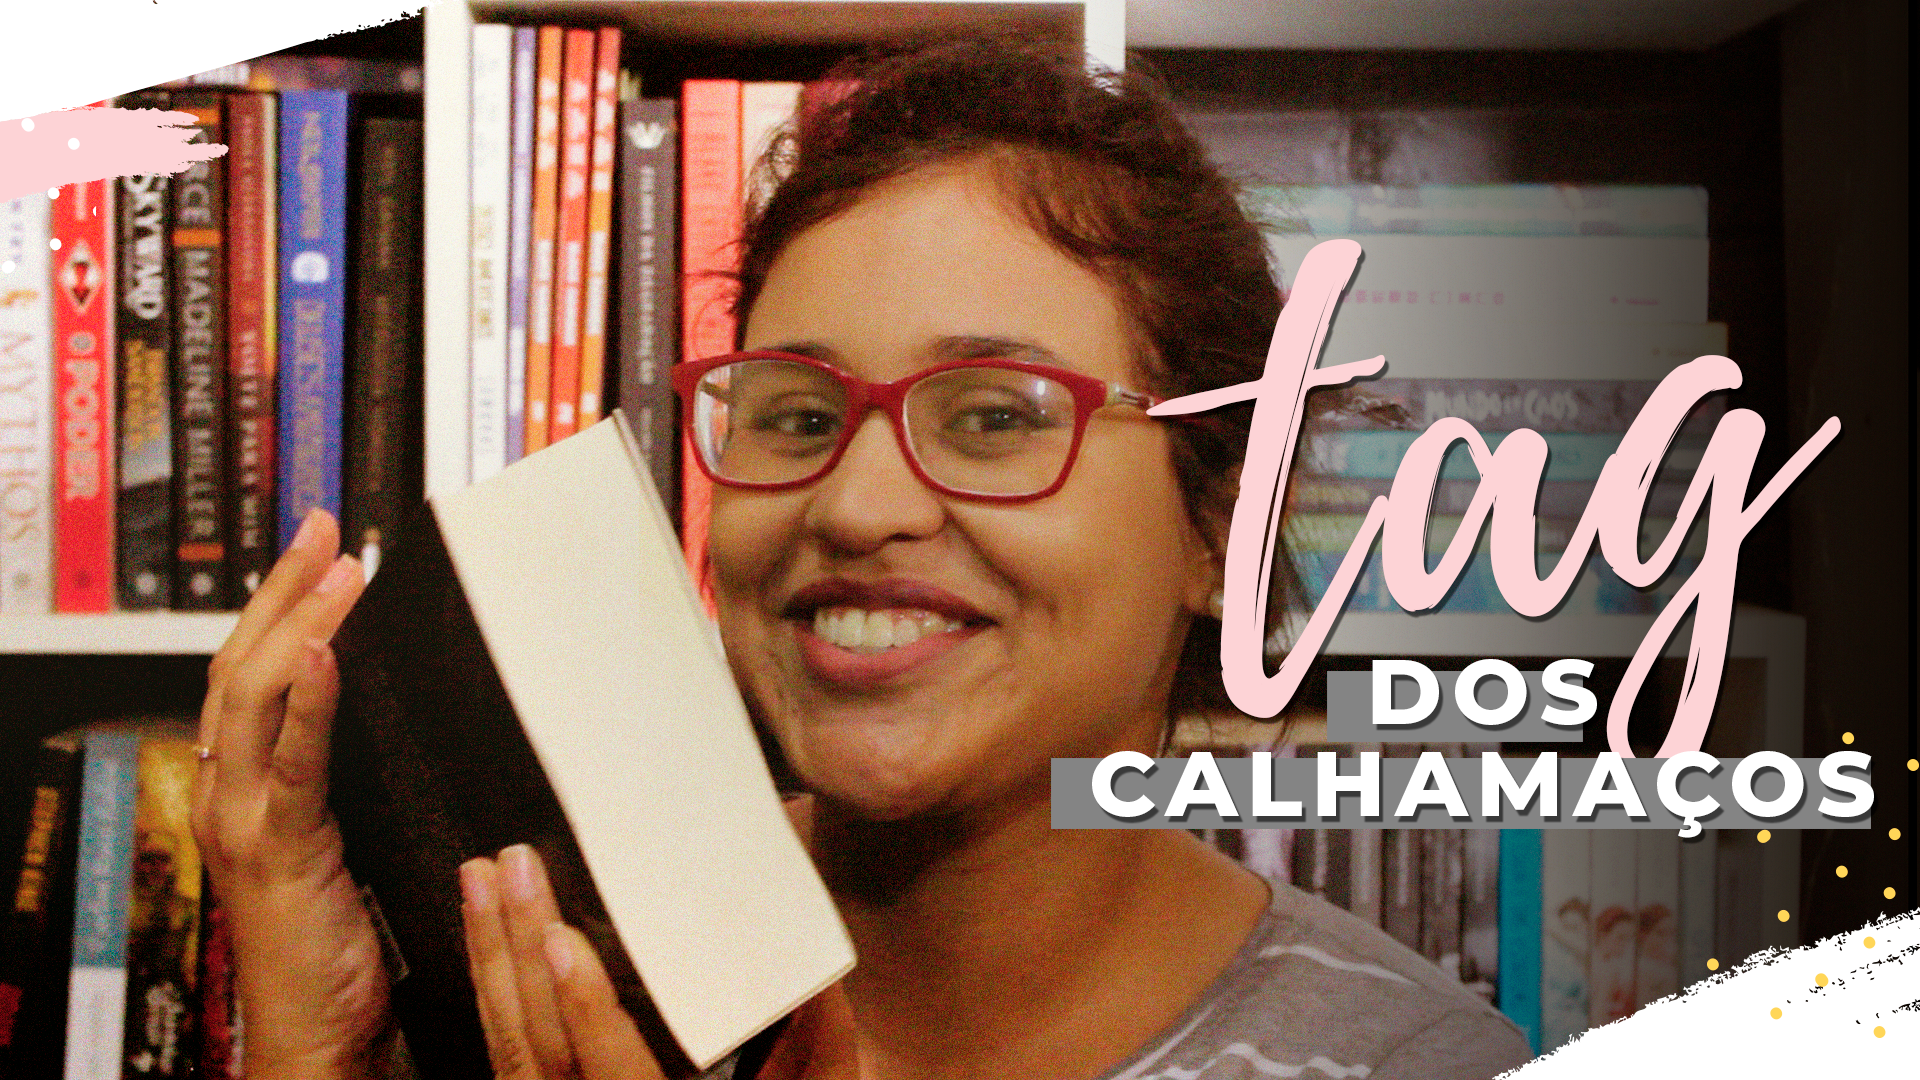 Booktag | Tag Calhamaços + Organização da Estante